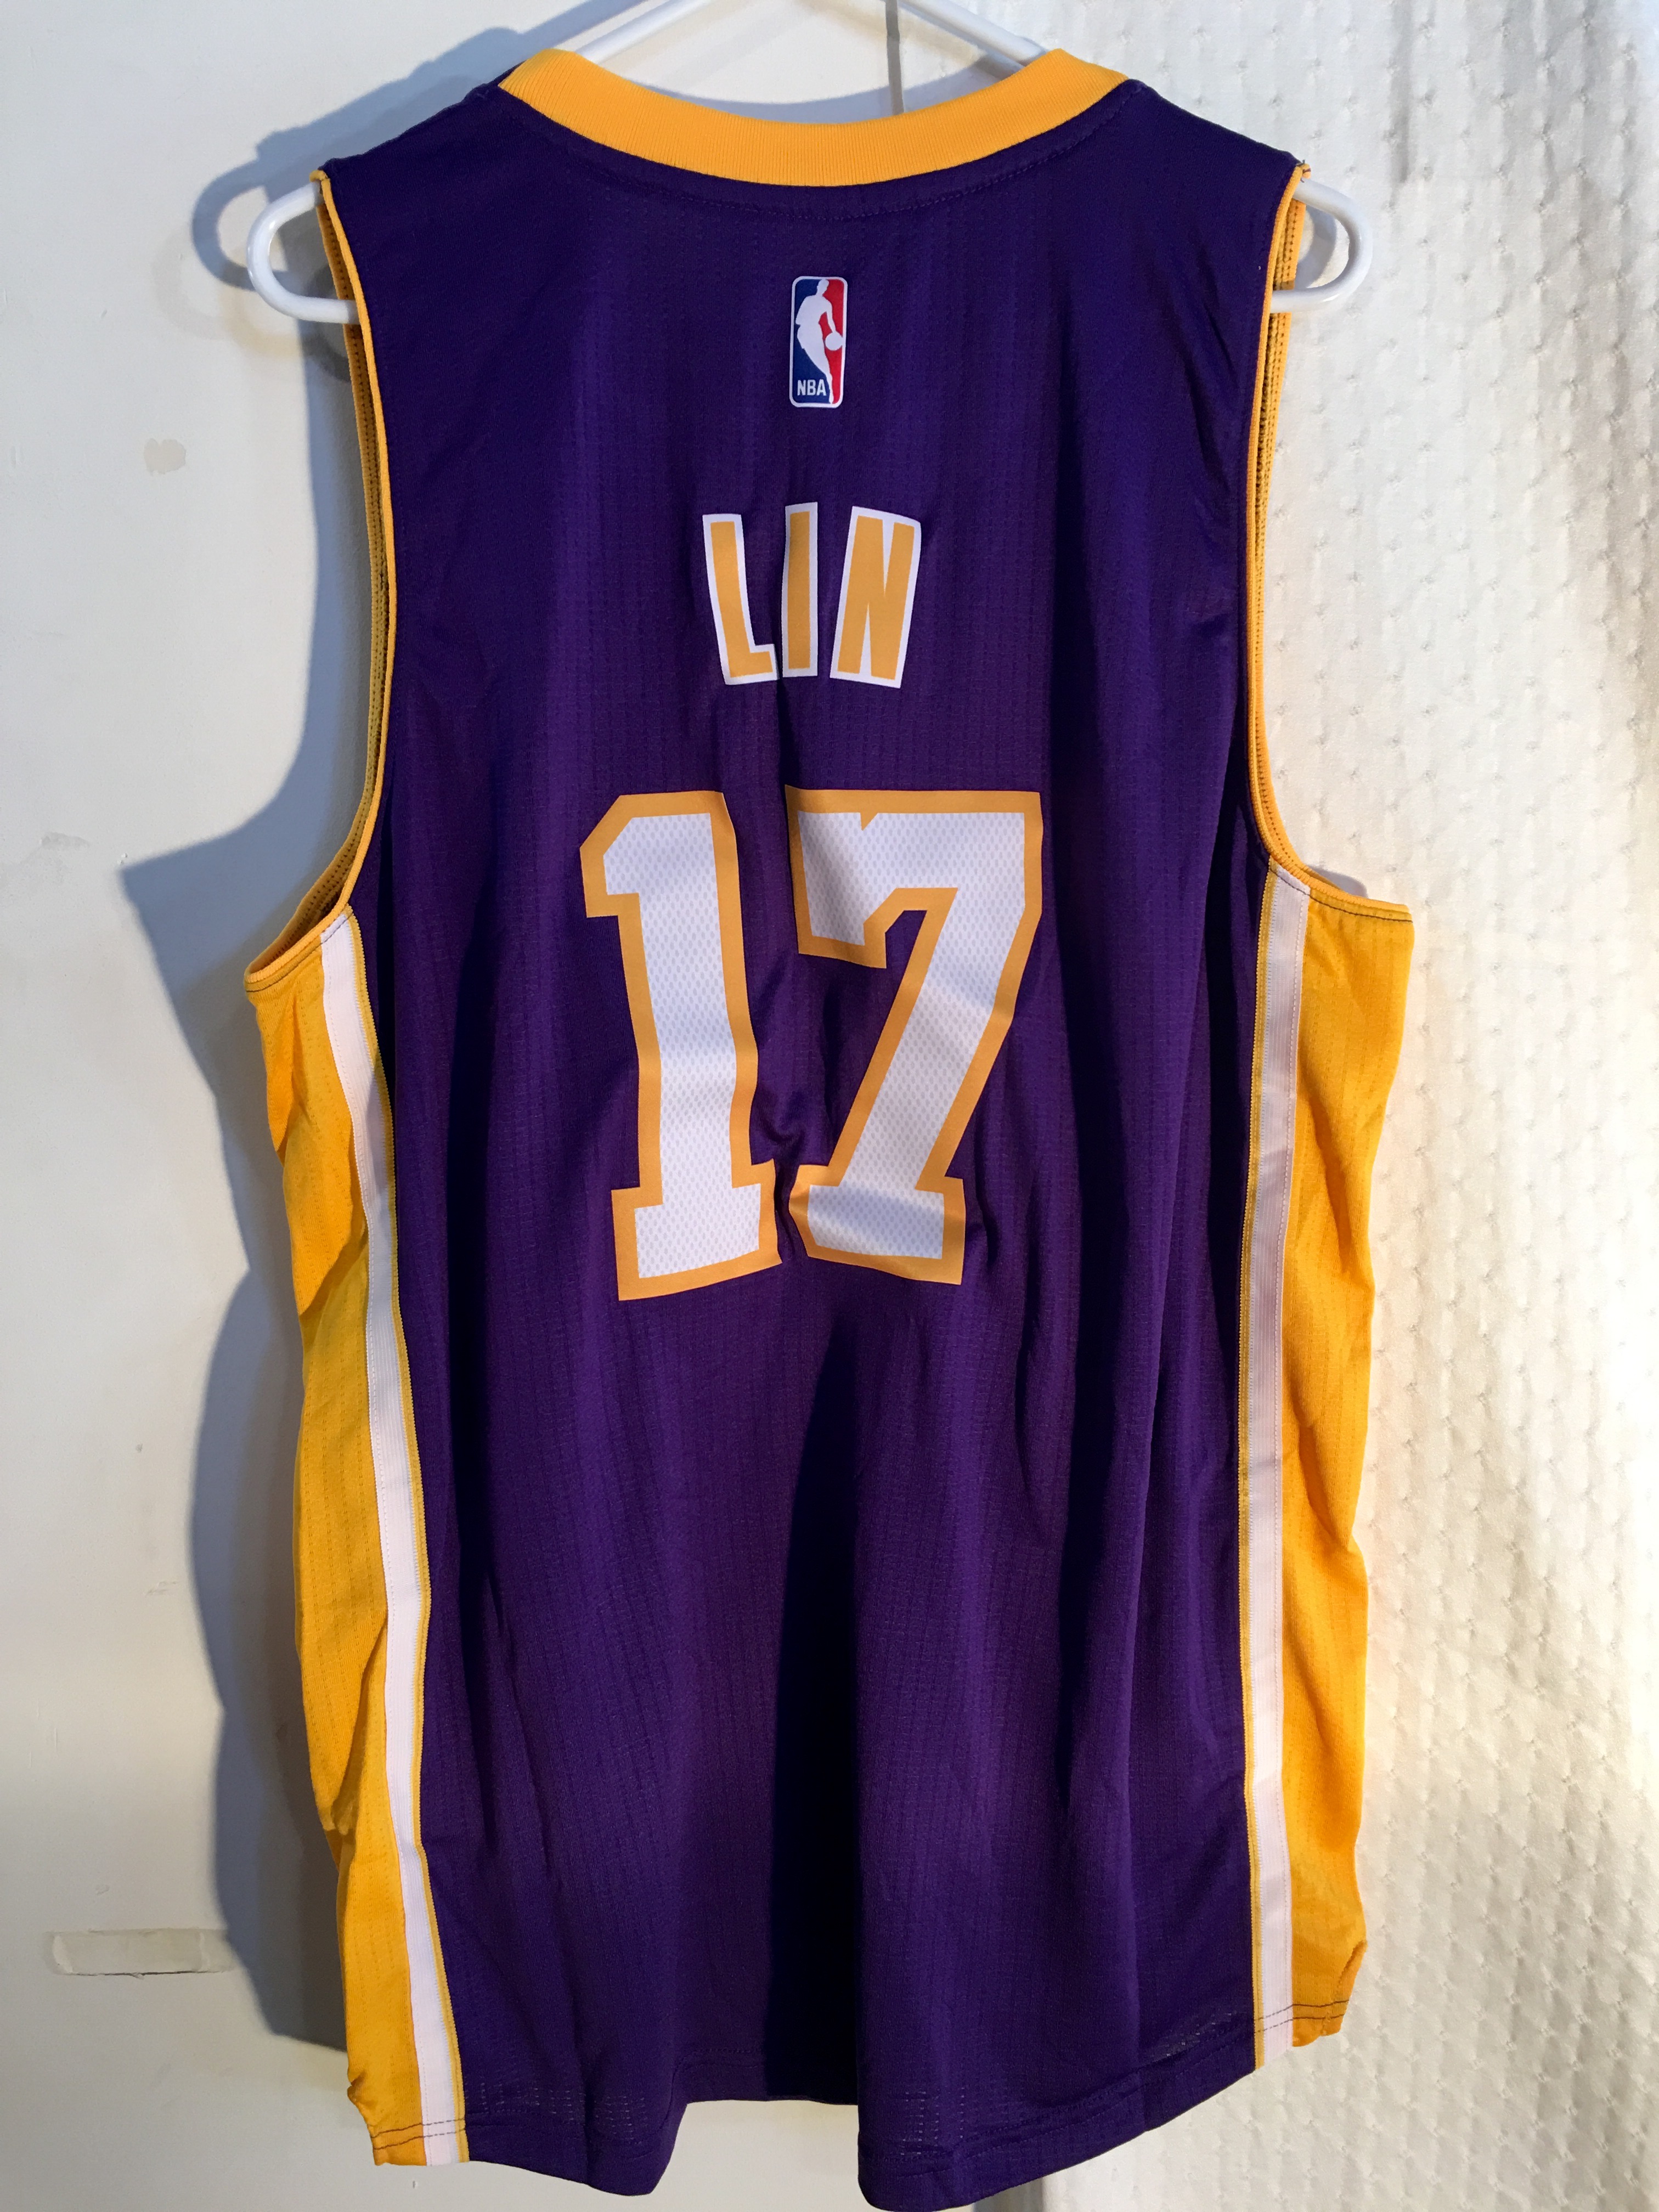 Adidas Swingman NBA Jersey Los Angeles Lakers Jeremy Lin Purple sz S - 第 1/1 張圖片